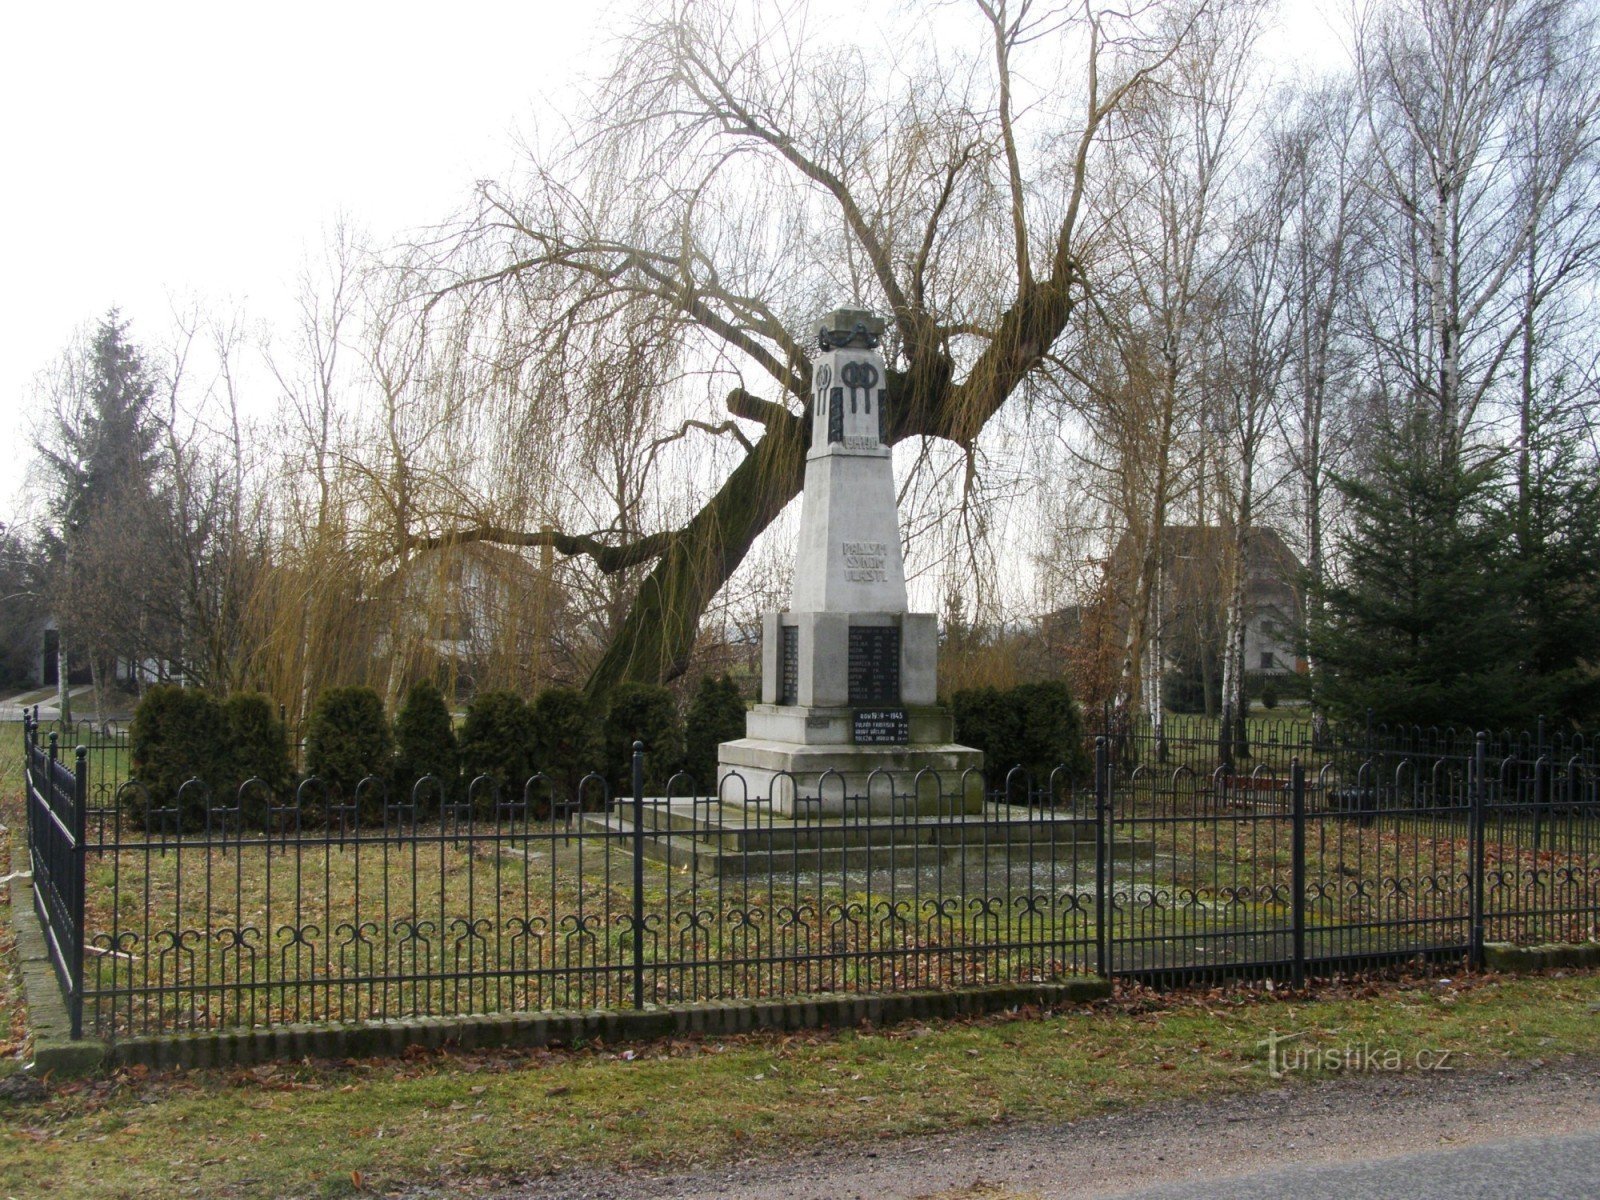 Roudnice - tượng đài các nạn nhân của Thế chiến 1 và Thế chiến 2 chiến tranh